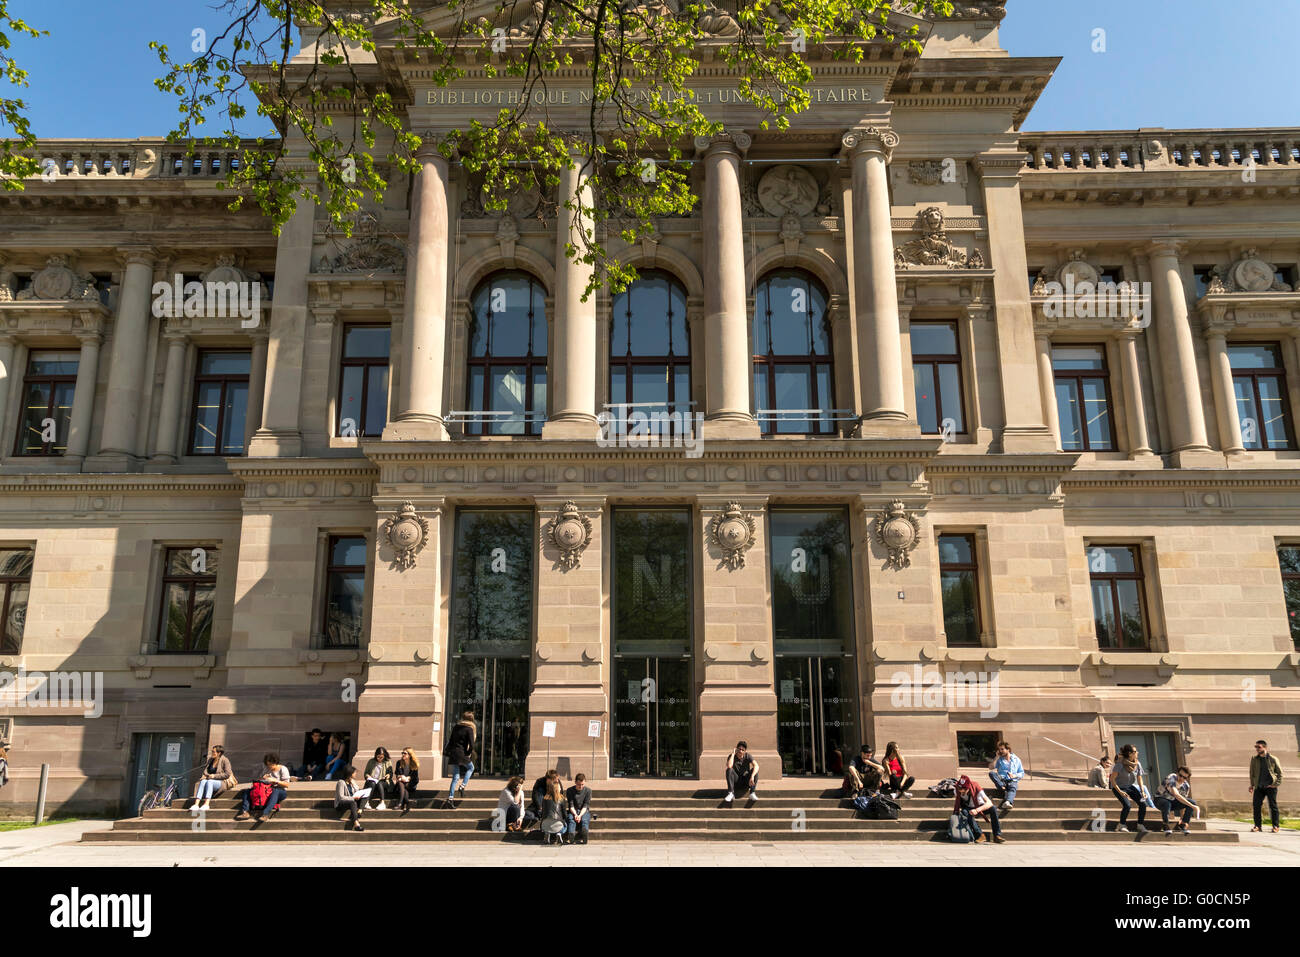 La Bibliothèque nationale et universitaire sur la Place de la République à Strasbourg, Alsace, France Banque D'Images